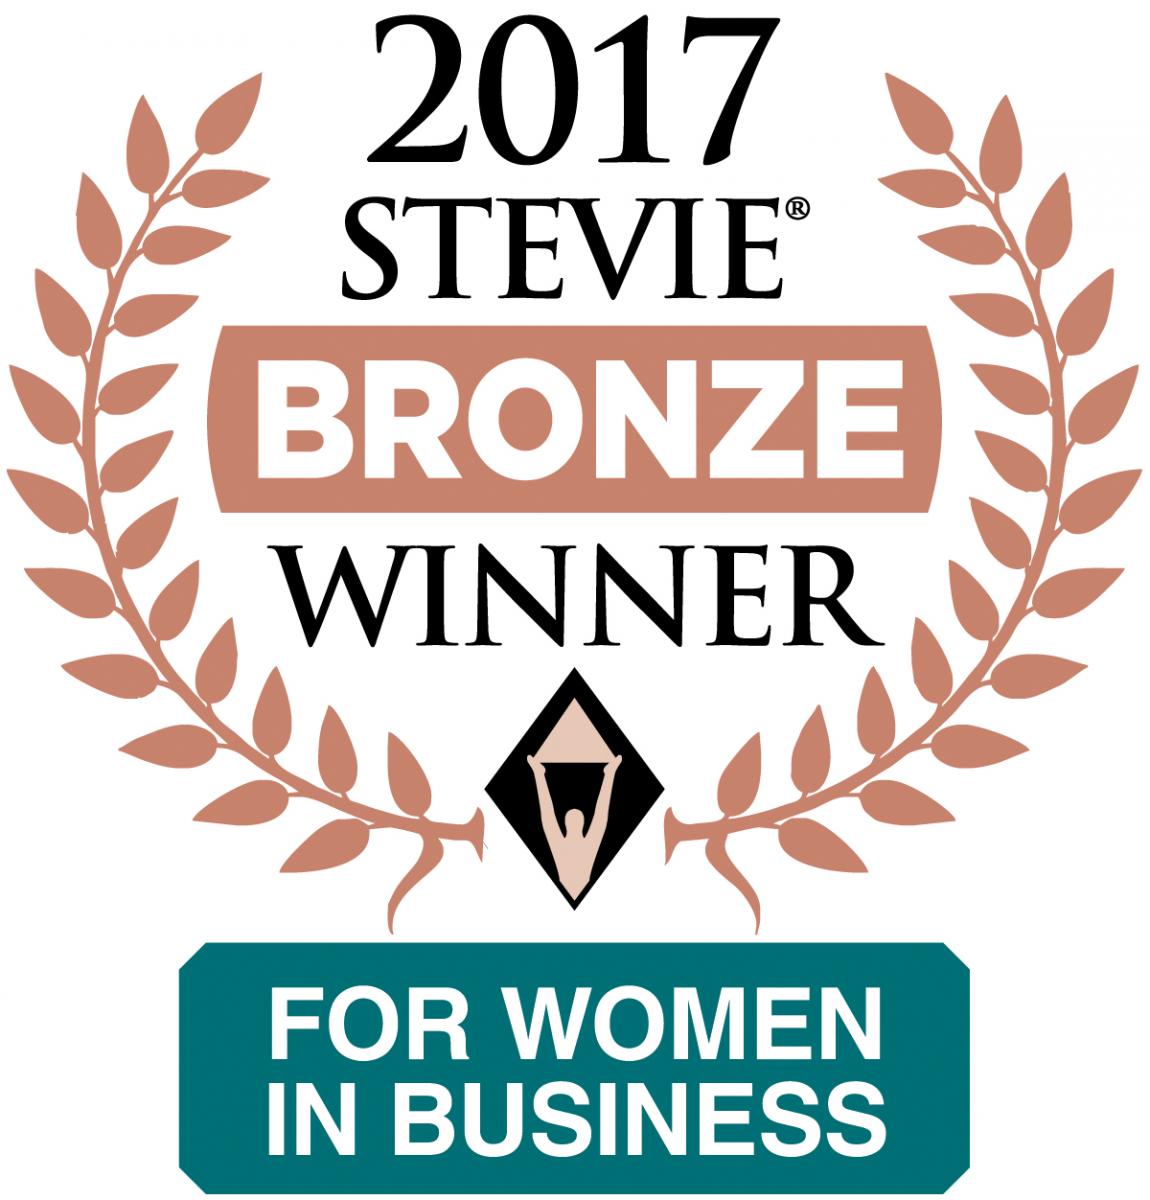 2017 Stevie Bronze winner for women in business.